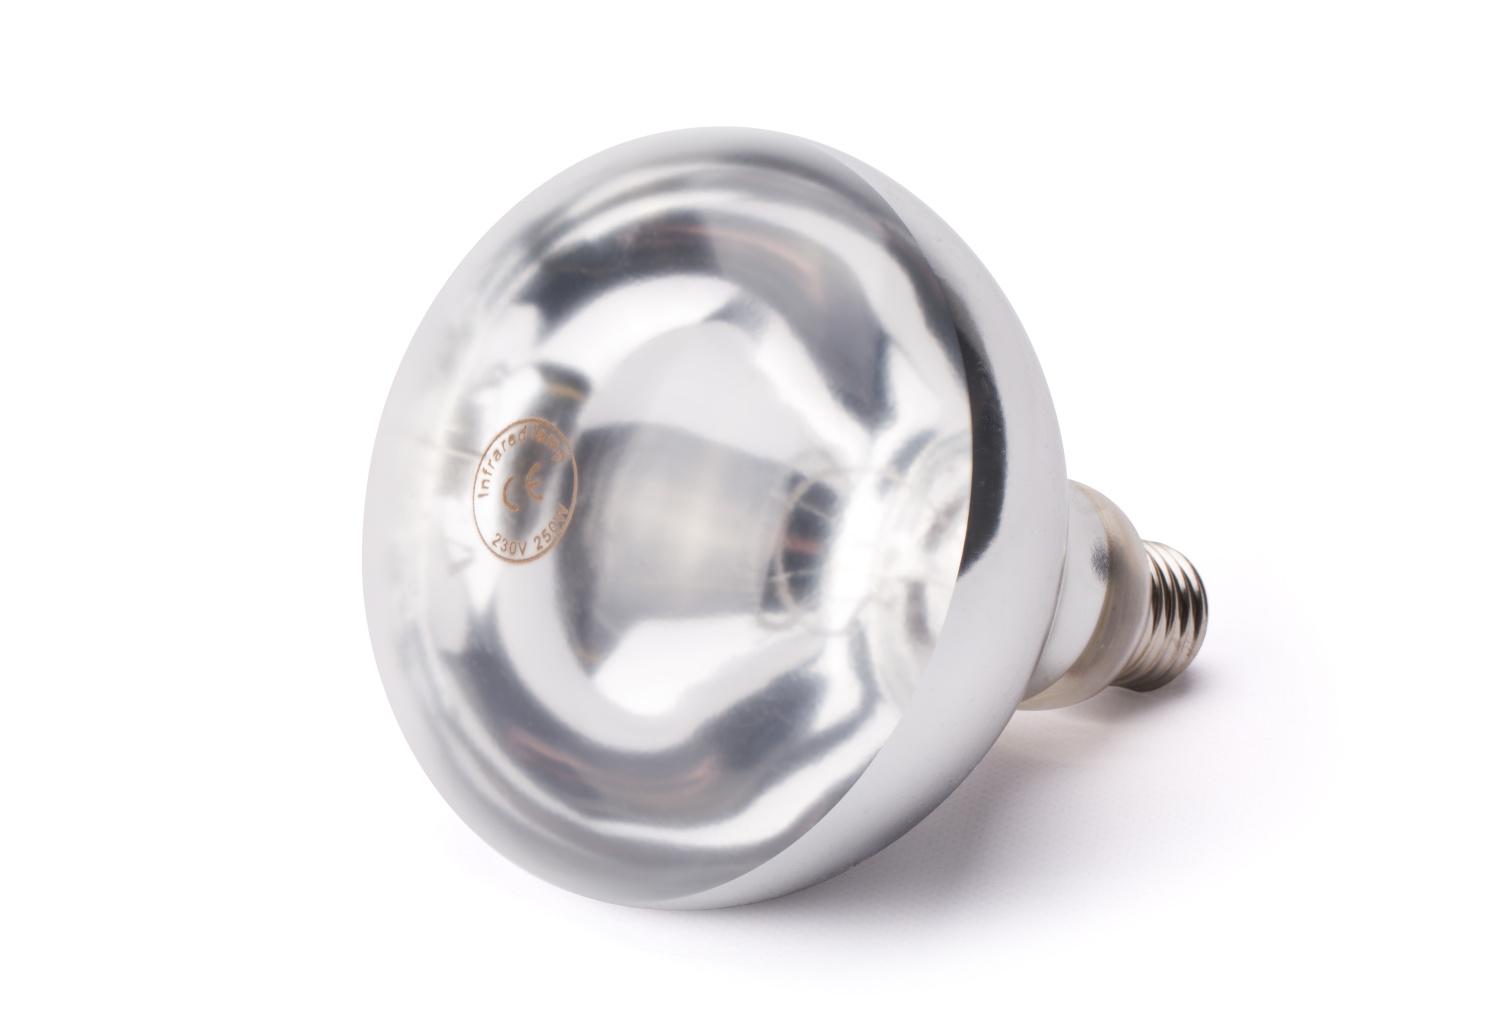 Infrarood Warmtelamp Wit  | E27